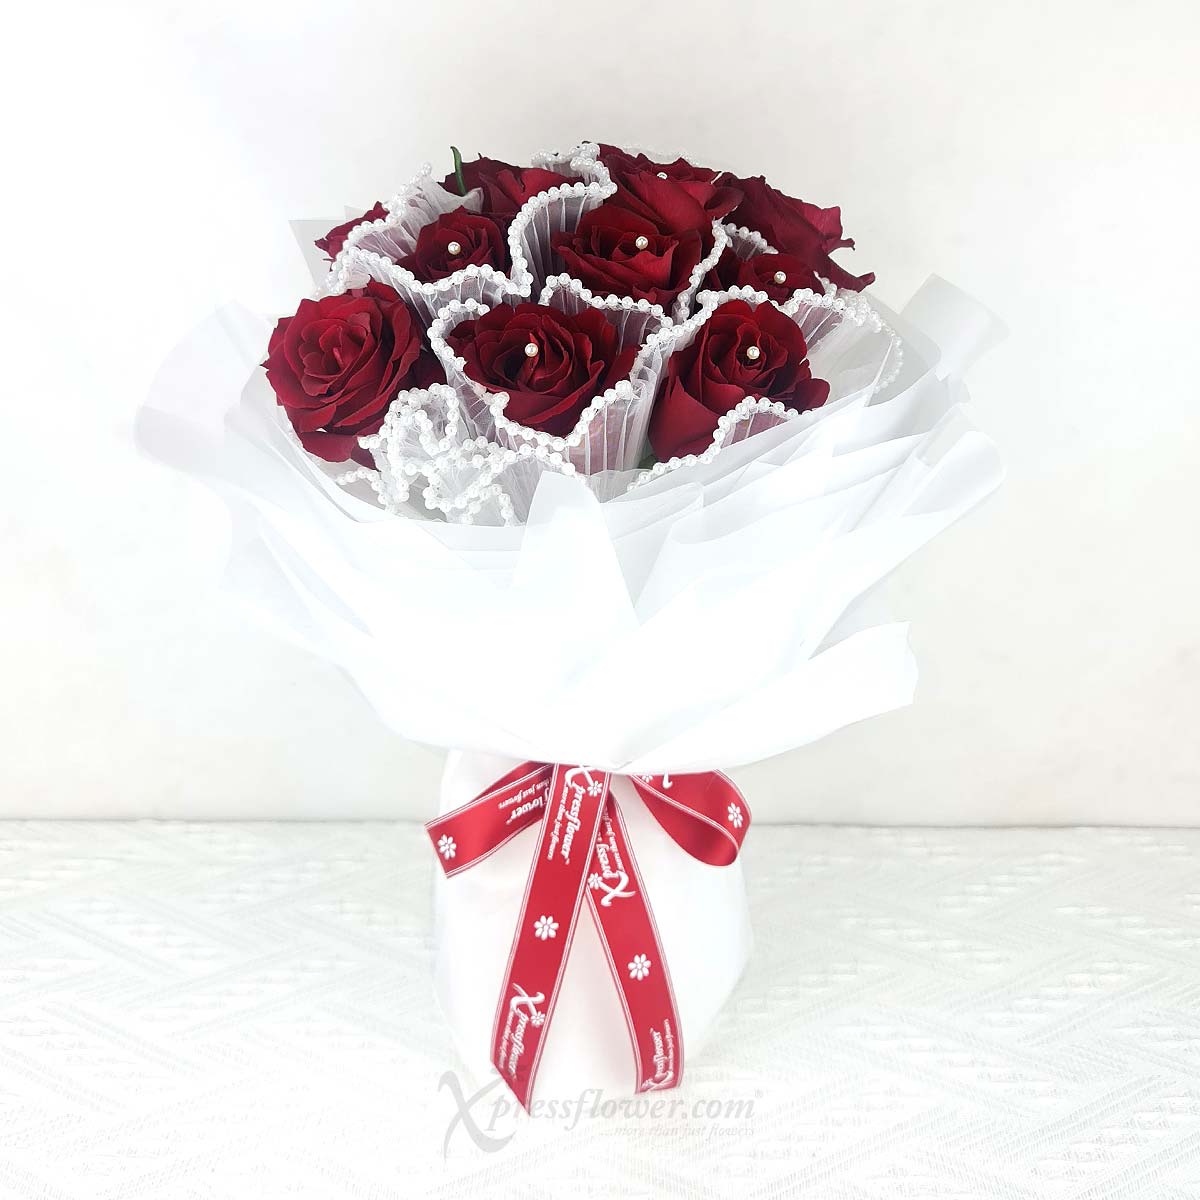 VDBQ2405_Heartfelt Blossom 12 Red Roses_1B